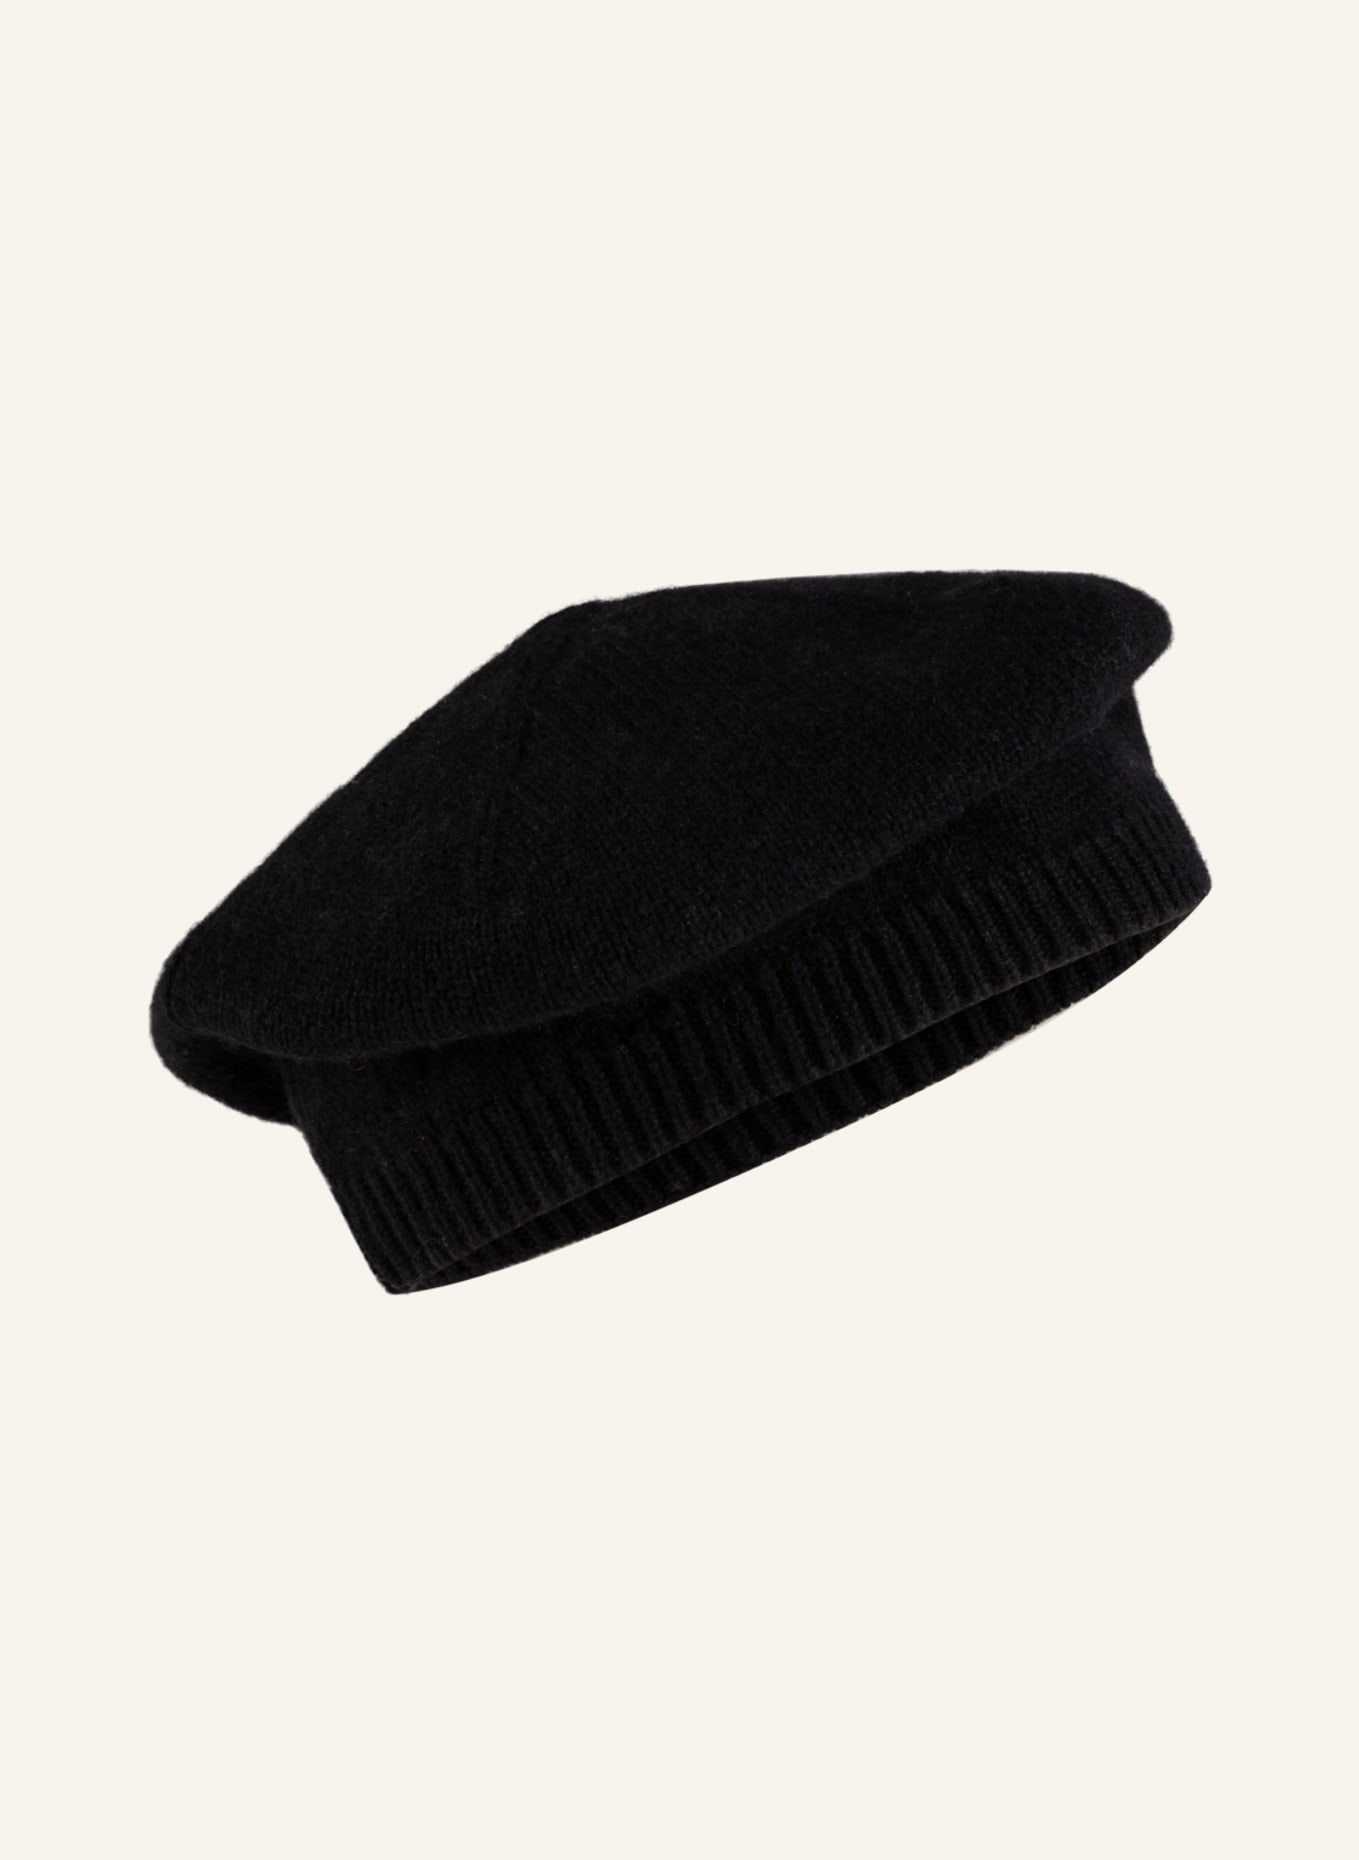 S.MARLON Cashmere hat, Color: BLACK (Image 2)